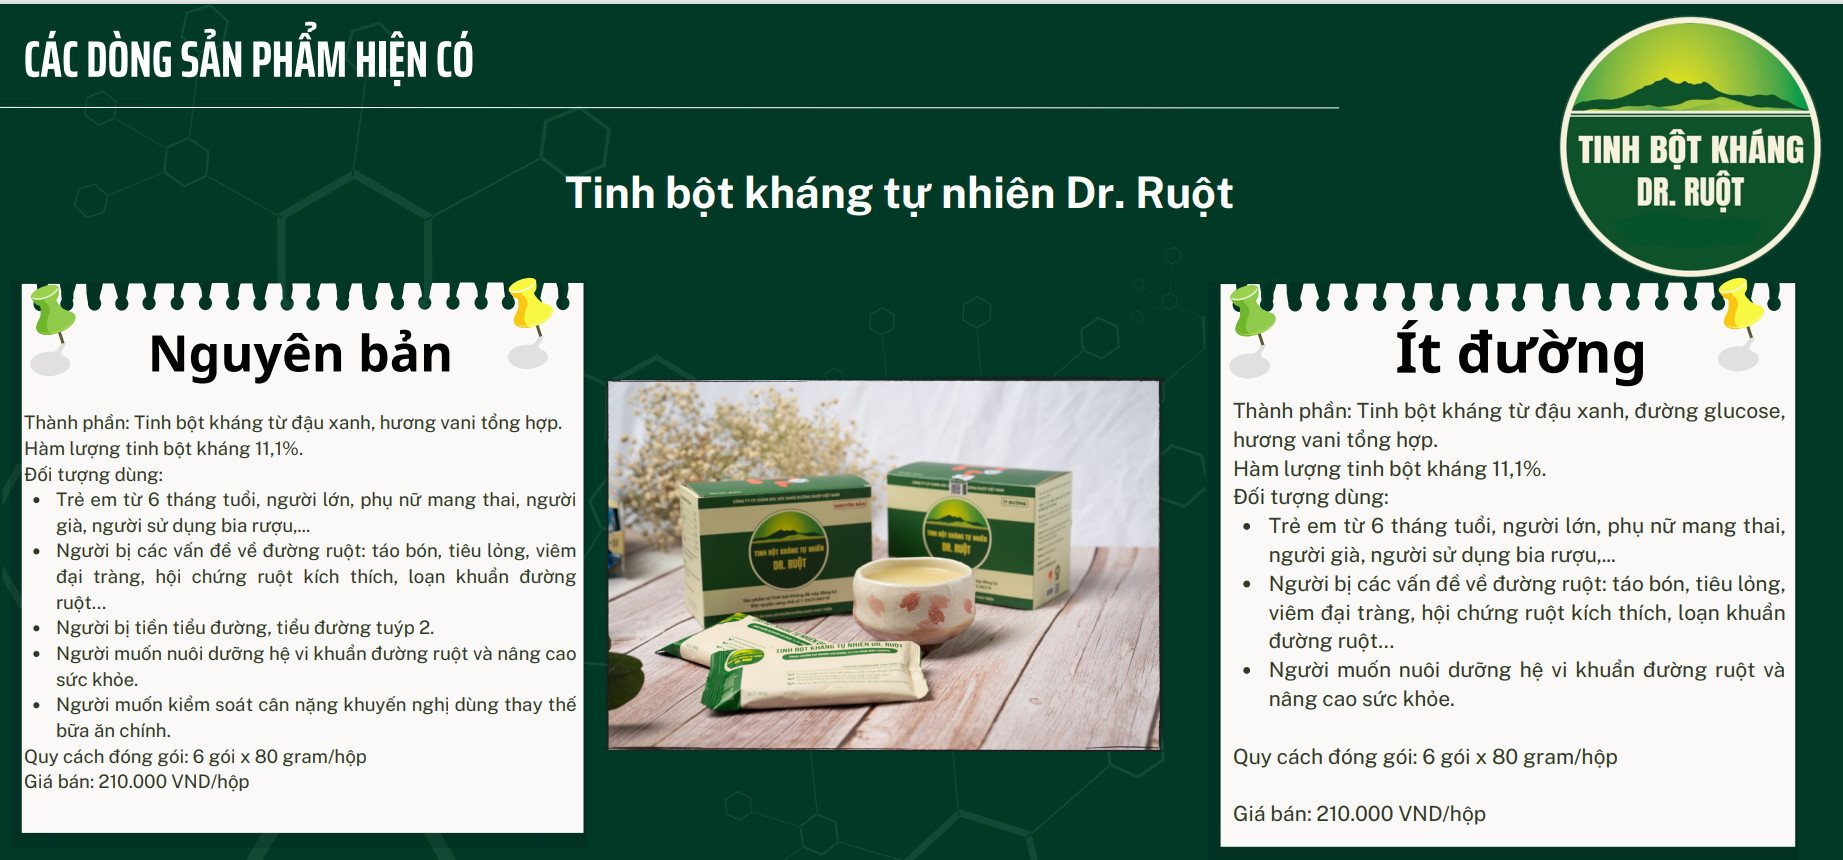 Mô tả công dụng sản phẩm tinh bột kháng Dr. Ruột 11.1%